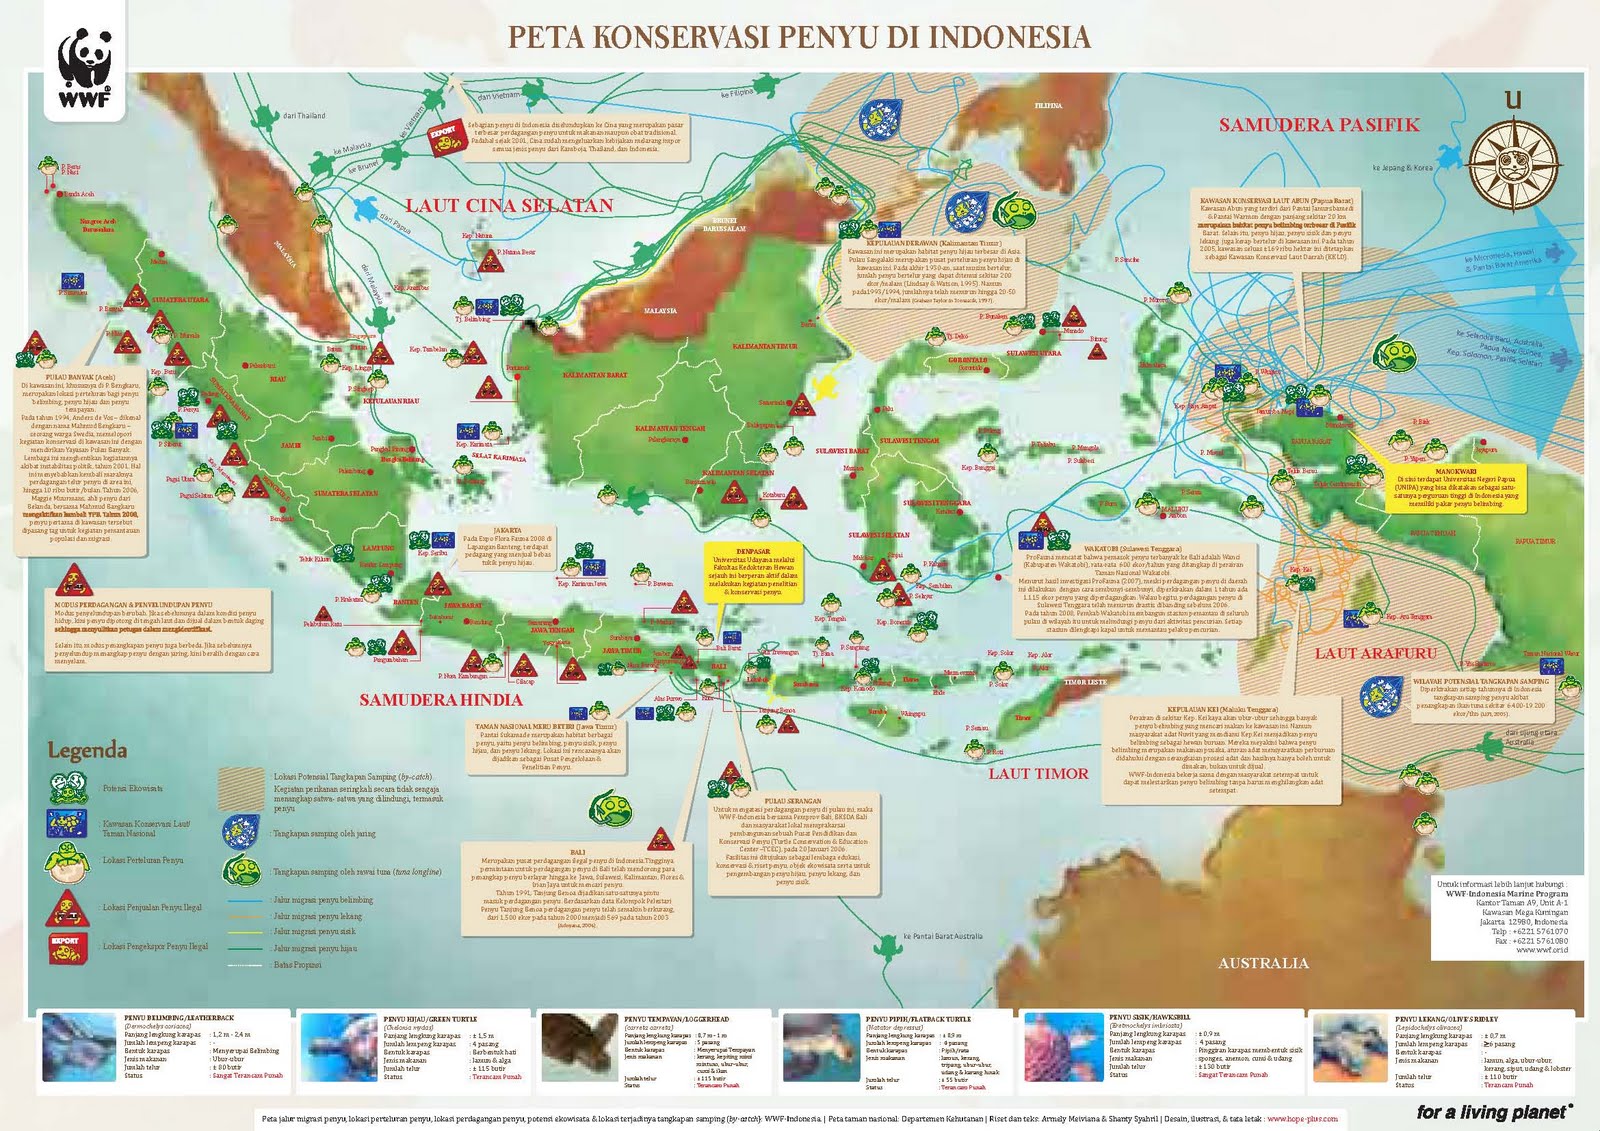 peta penyebaran penyu di  indonesia  BLOG TANI NELAYANKU 